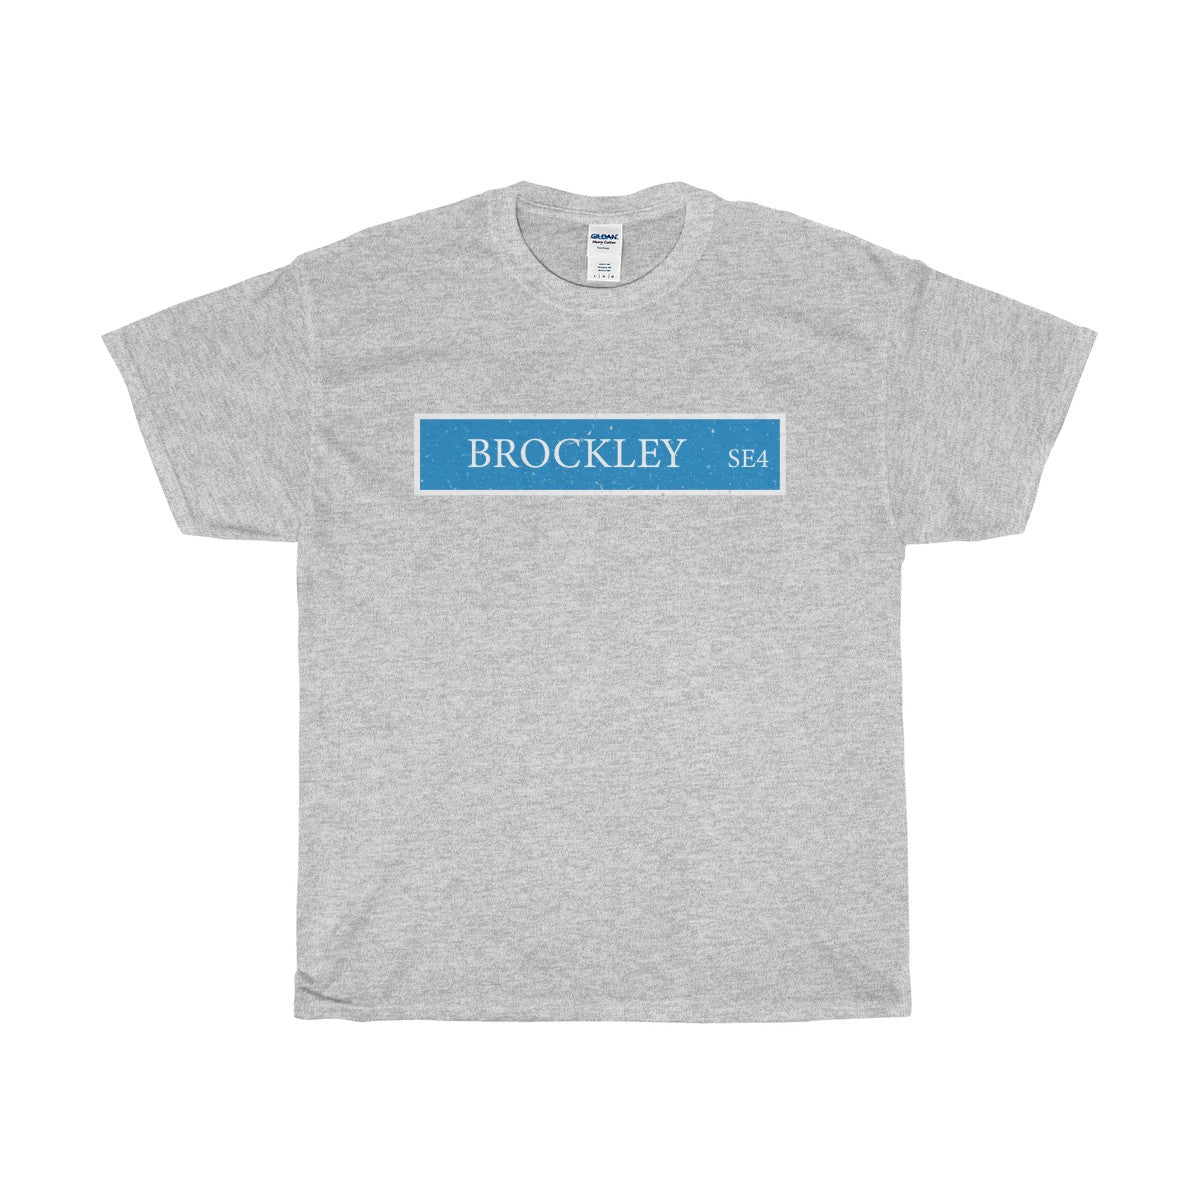 Brockley Road Sign T-Shirt